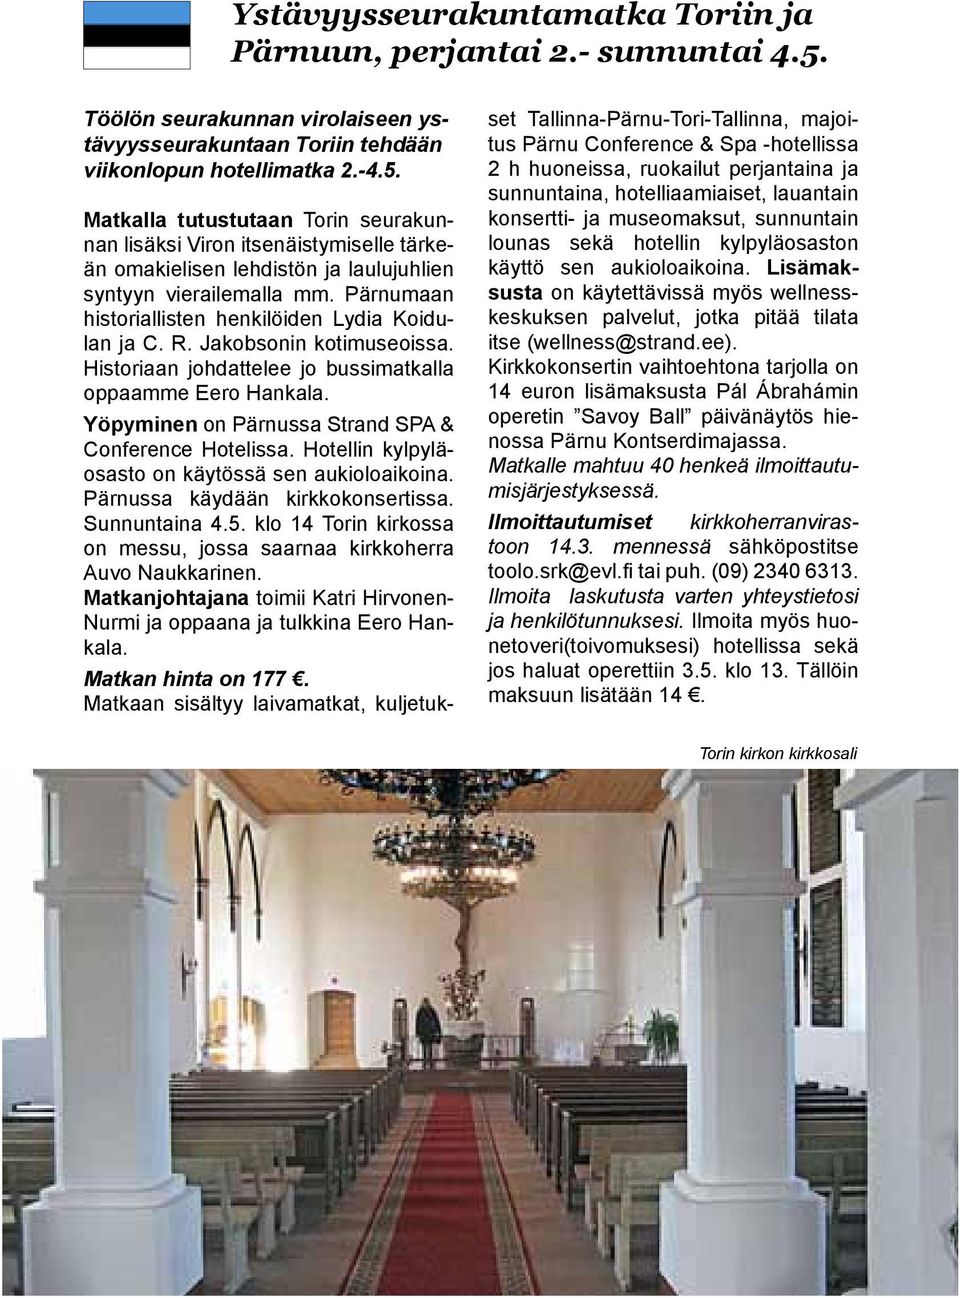 Matkalla tutustutaan Torin seurakunnan lisäksi Viron itsenäistymiselle tärkeän omakielisen lehdistön ja laulujuhlien syntyyn vierailemalla mm.